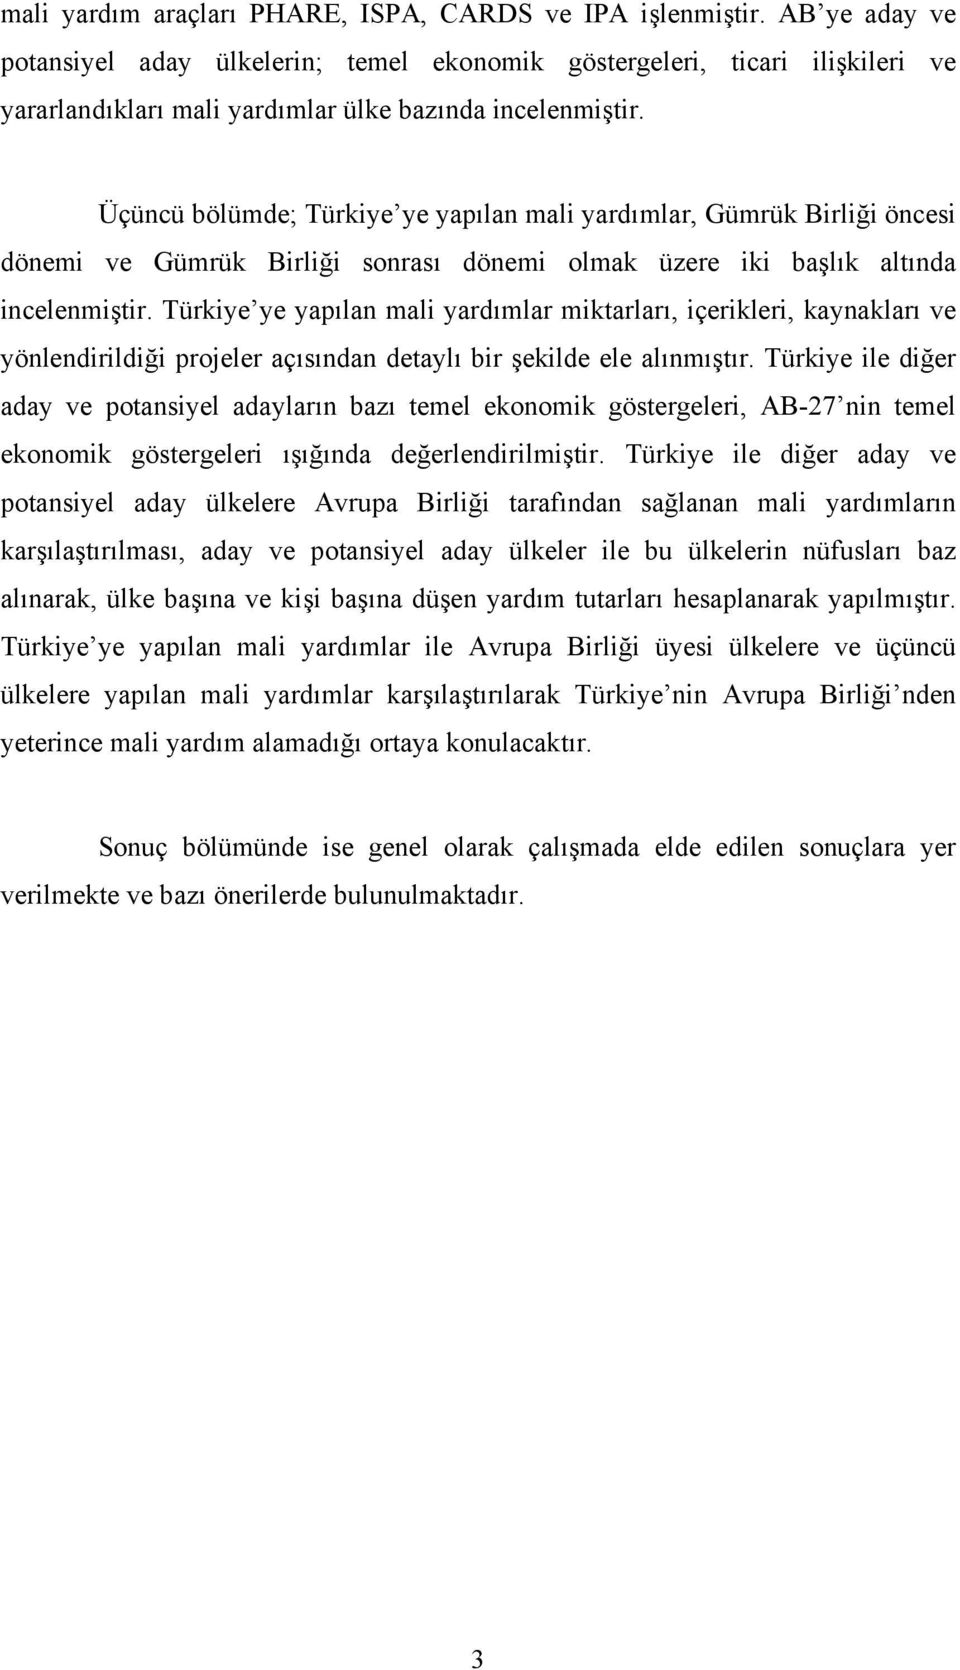 Üçüncü bölümde; Türkiye ye yapılan mali yardımlar, Gümrük Birliği öncesi dönemi ve Gümrük Birliği sonrası dönemi olmak üzere iki başlık altında incelenmiştir.